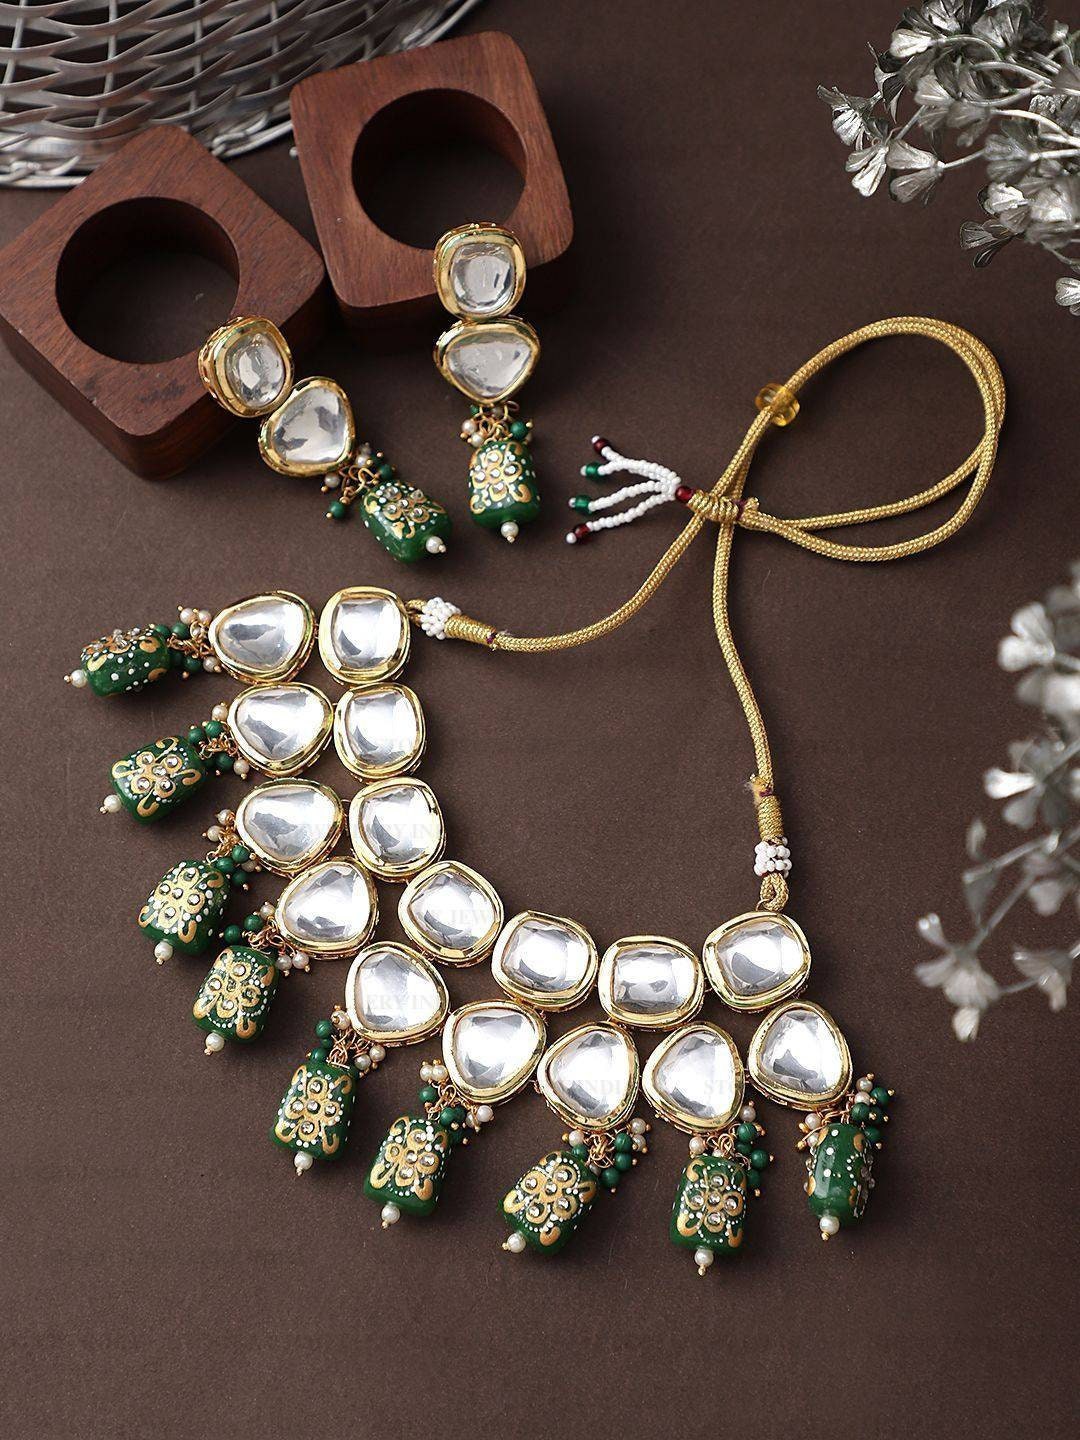 Heavy Meenakari Jadau Kundan Handmade Kundan Bridal Choker Set, Tanjore Semiprecious Stone Kundan Necklace, Customizable Indian Jewelry Set | Save 33% - Rajasthan Living 11